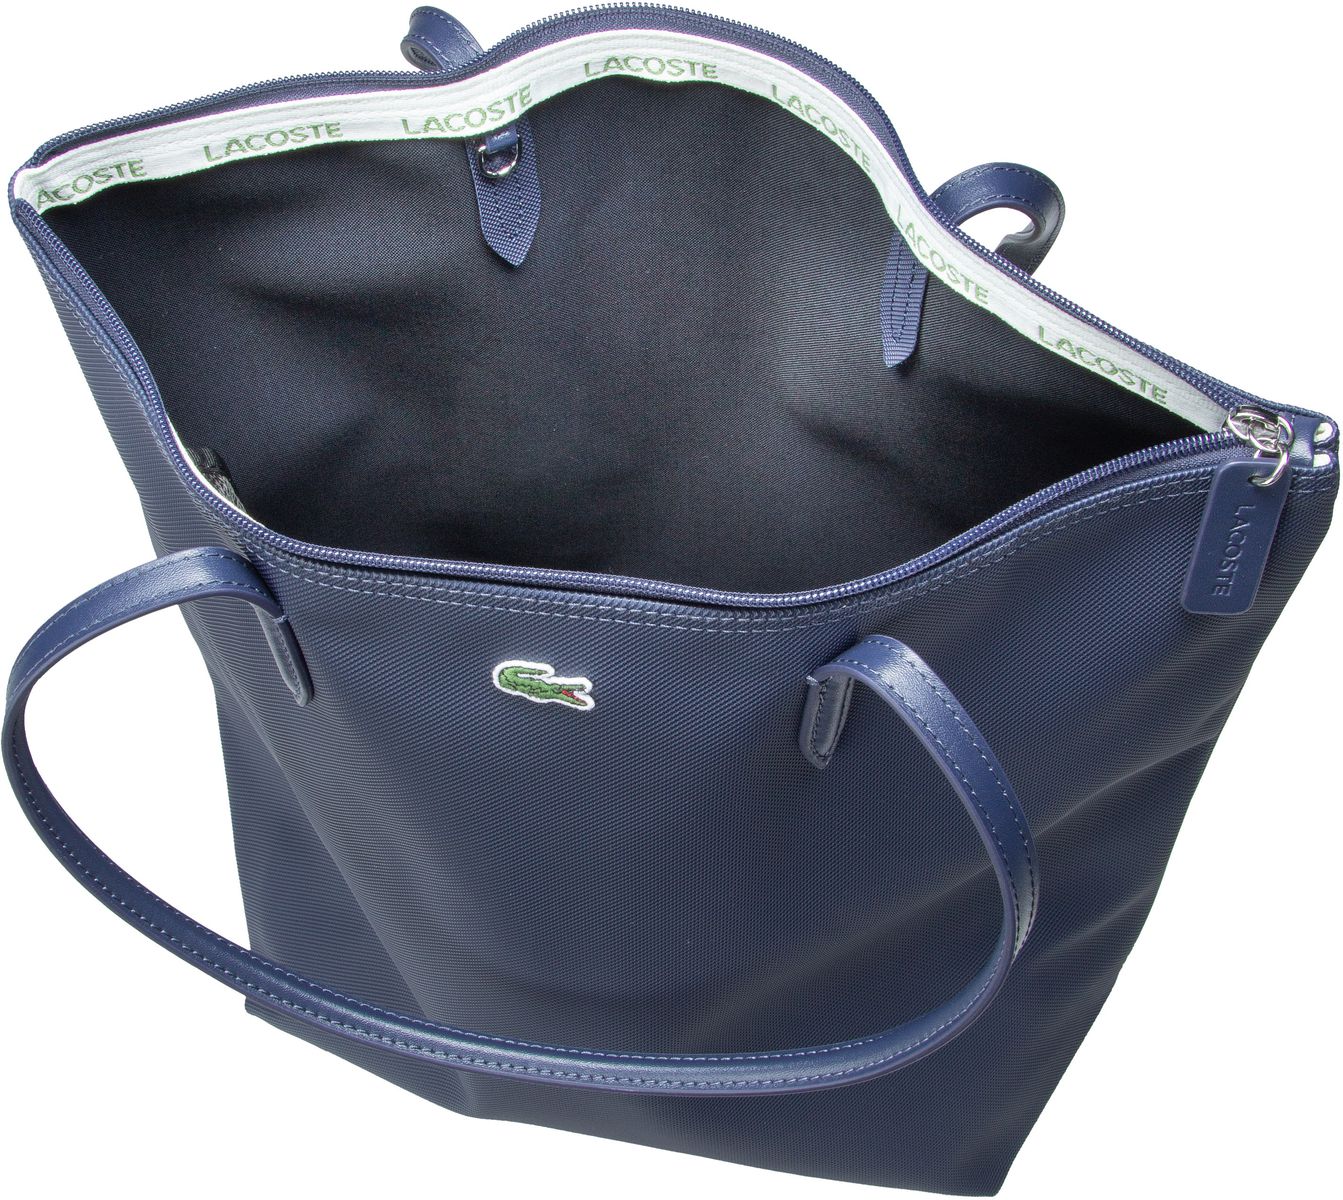 Lacoste L.12.12. Concept Vertical Shopping Bag - Eclipse